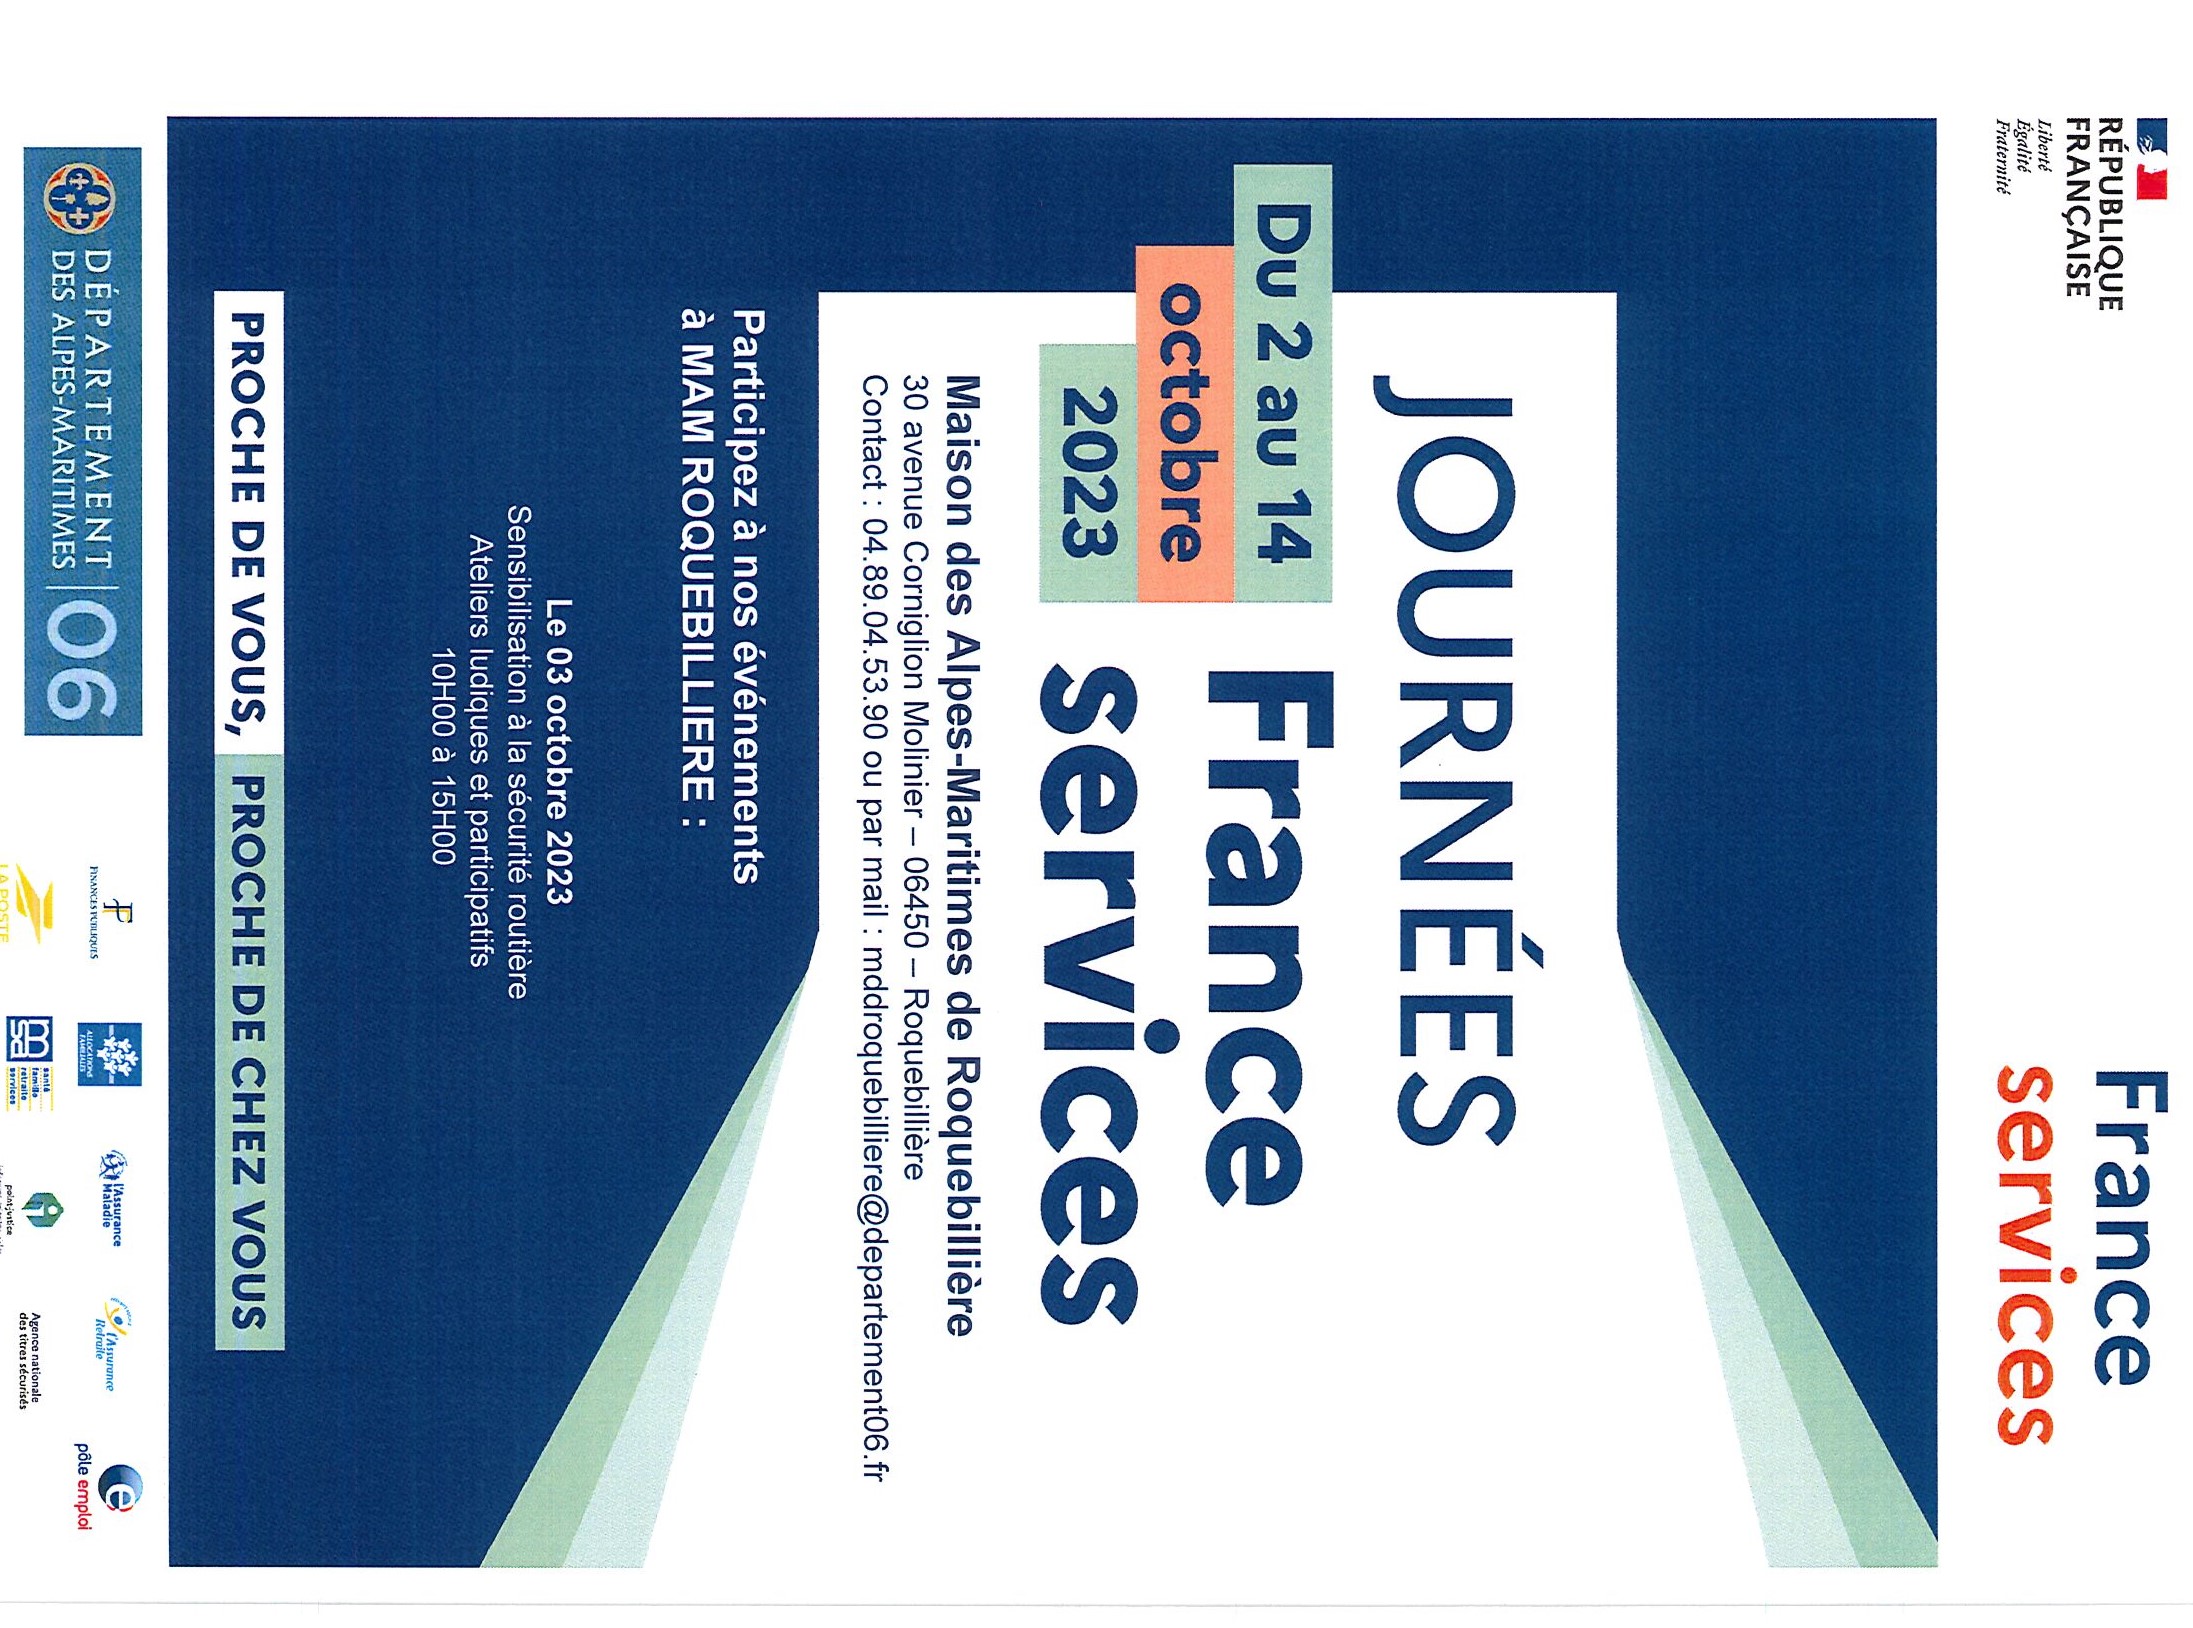 JOURNEES-FRANCE-SERVICES_0002.jpg - 679,11 kB